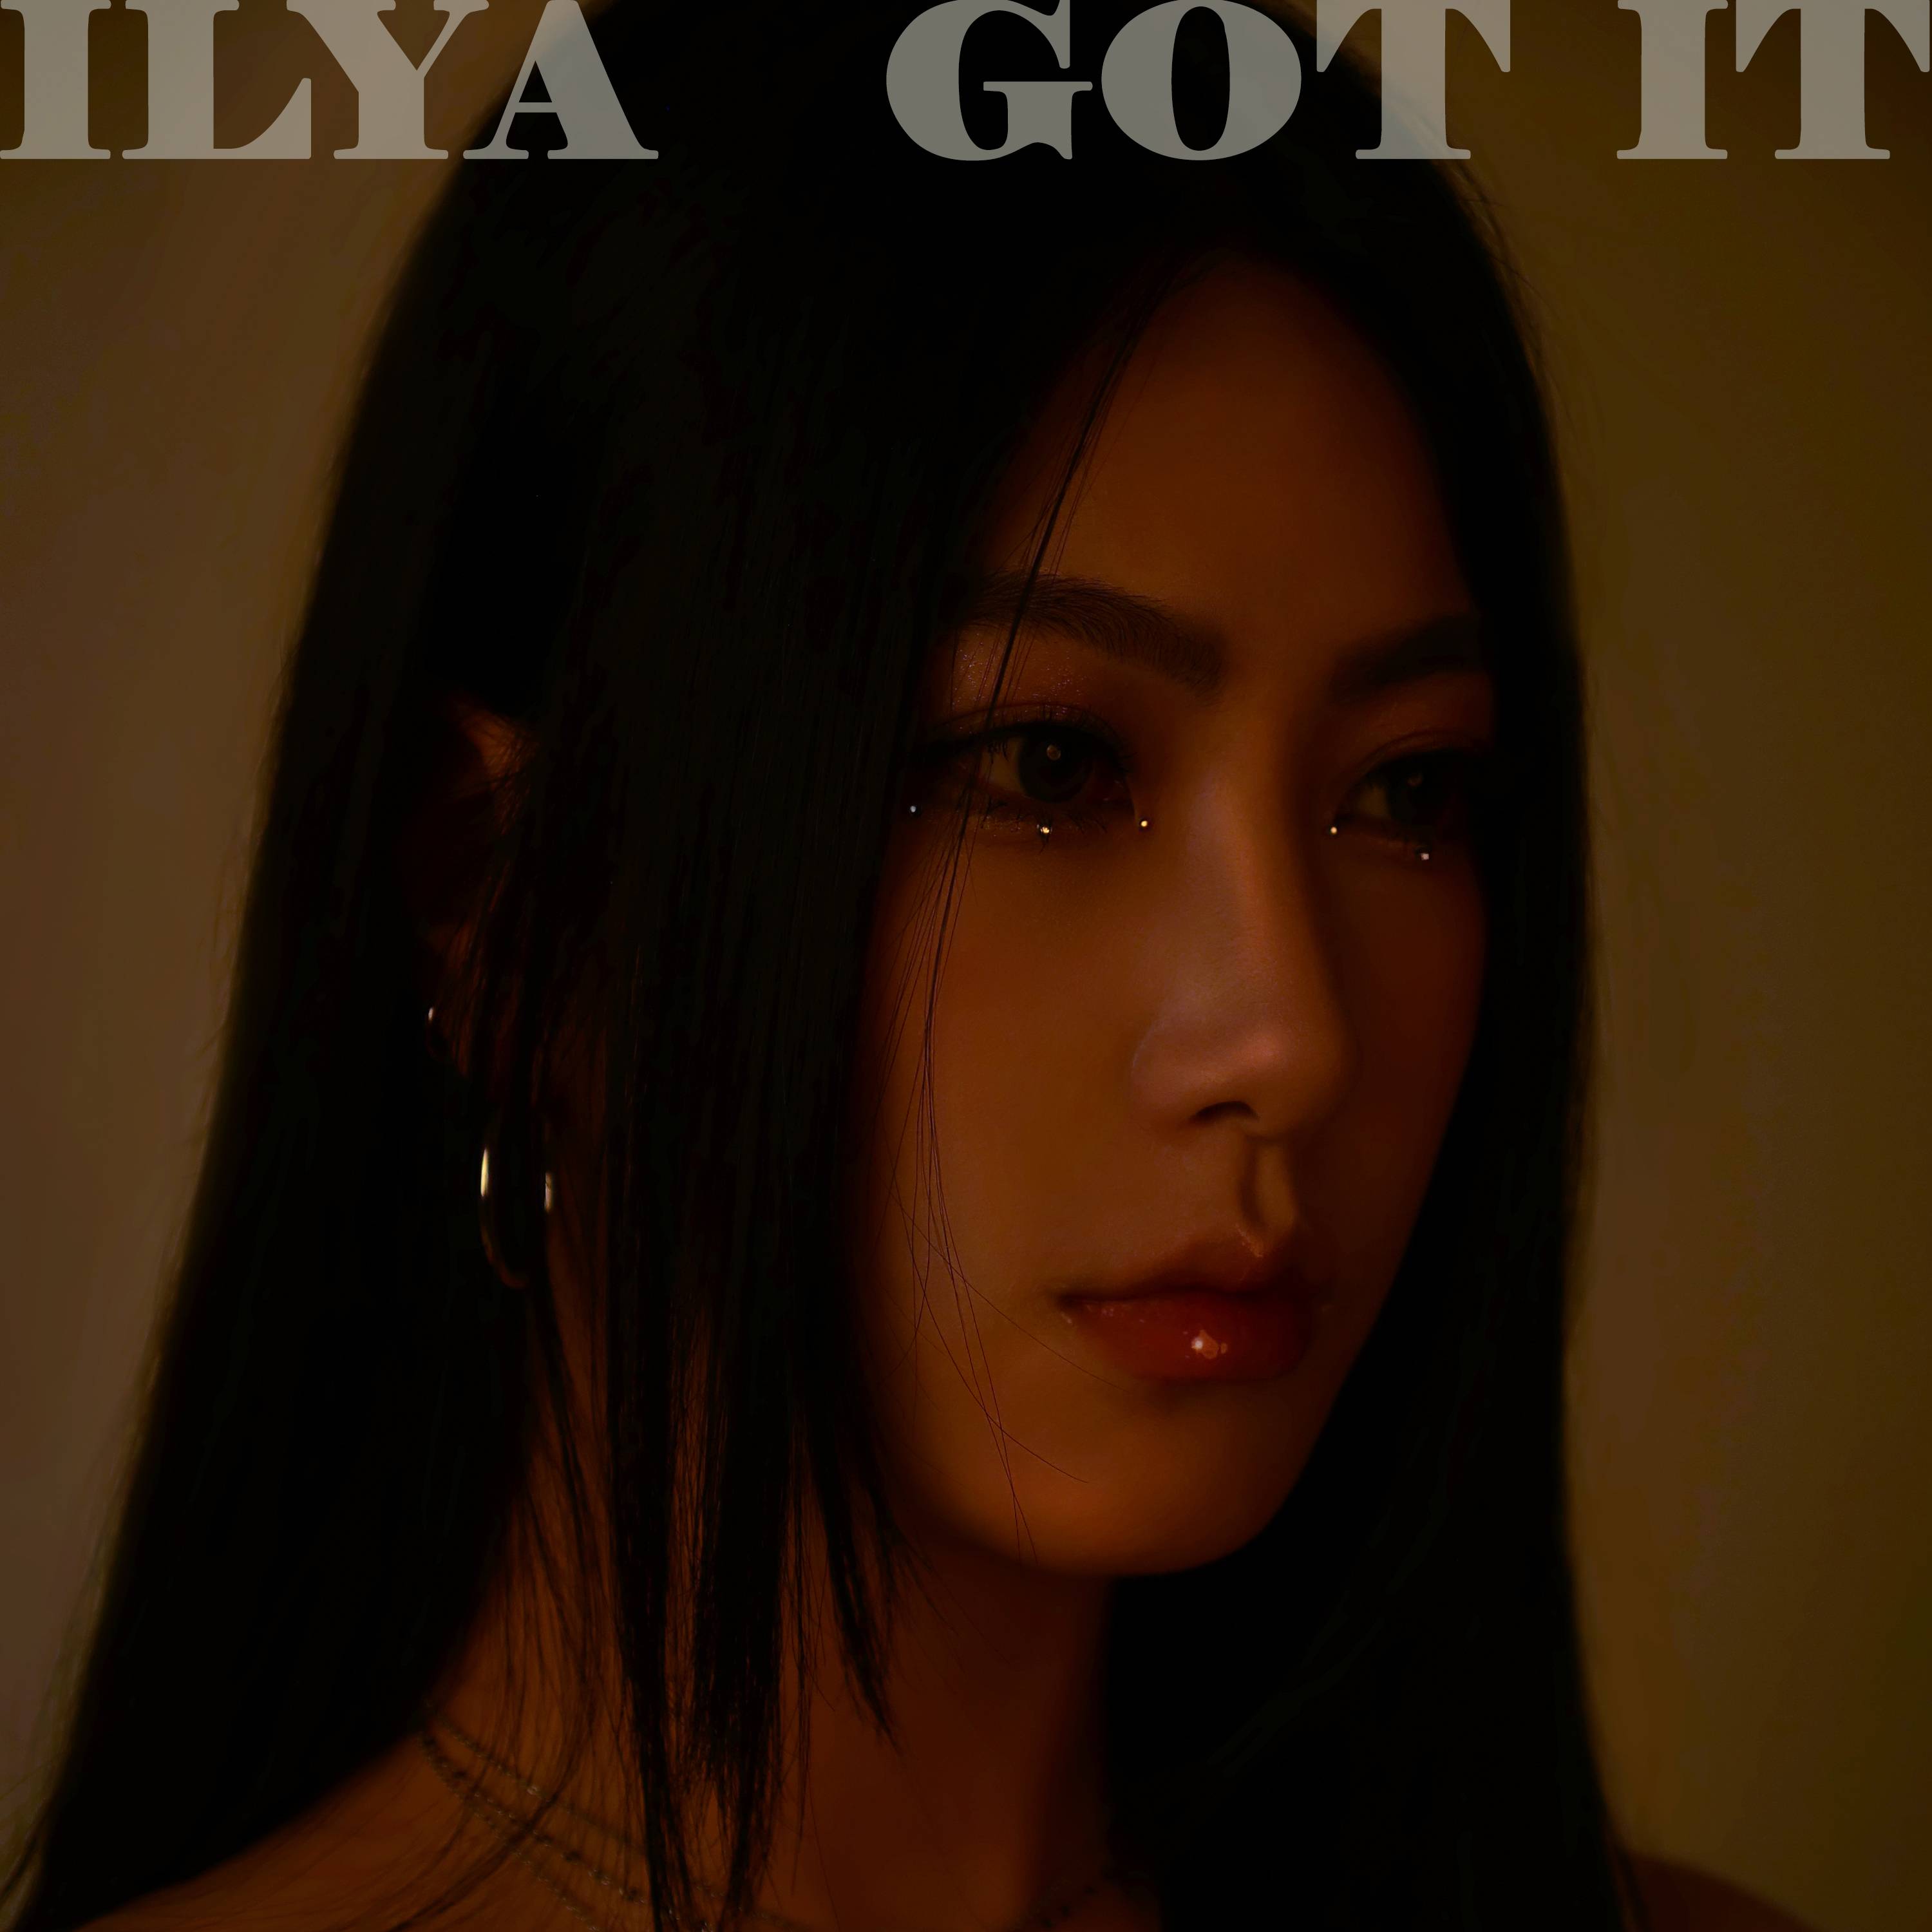 일리아(ILYA)의 새 싱글 ‘Got it’ 앨범 표지